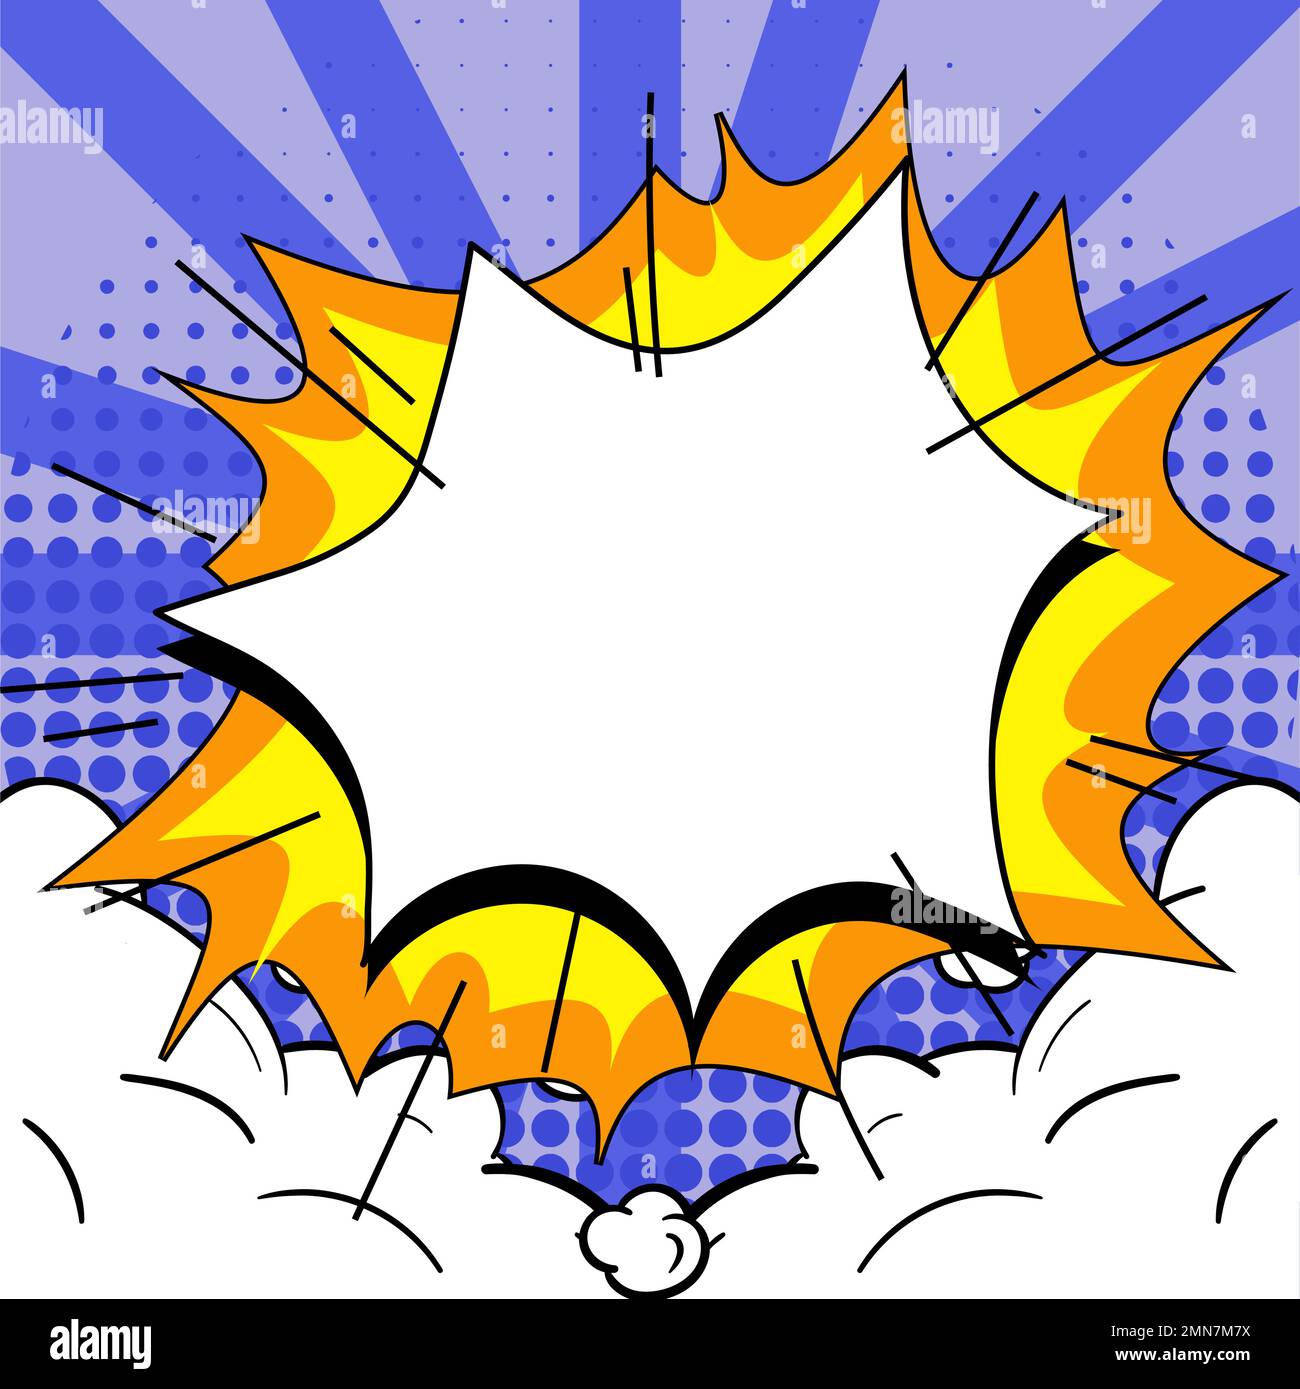 Comics Design-Rahmen. Bilderrahmen-Set Mit Explosionsblasen Zum Hinzufügen  Einer Collage, Lustige Comic-Fotosammlung Zur Werbeaktion  Stock-Vektorgrafik - Alamy